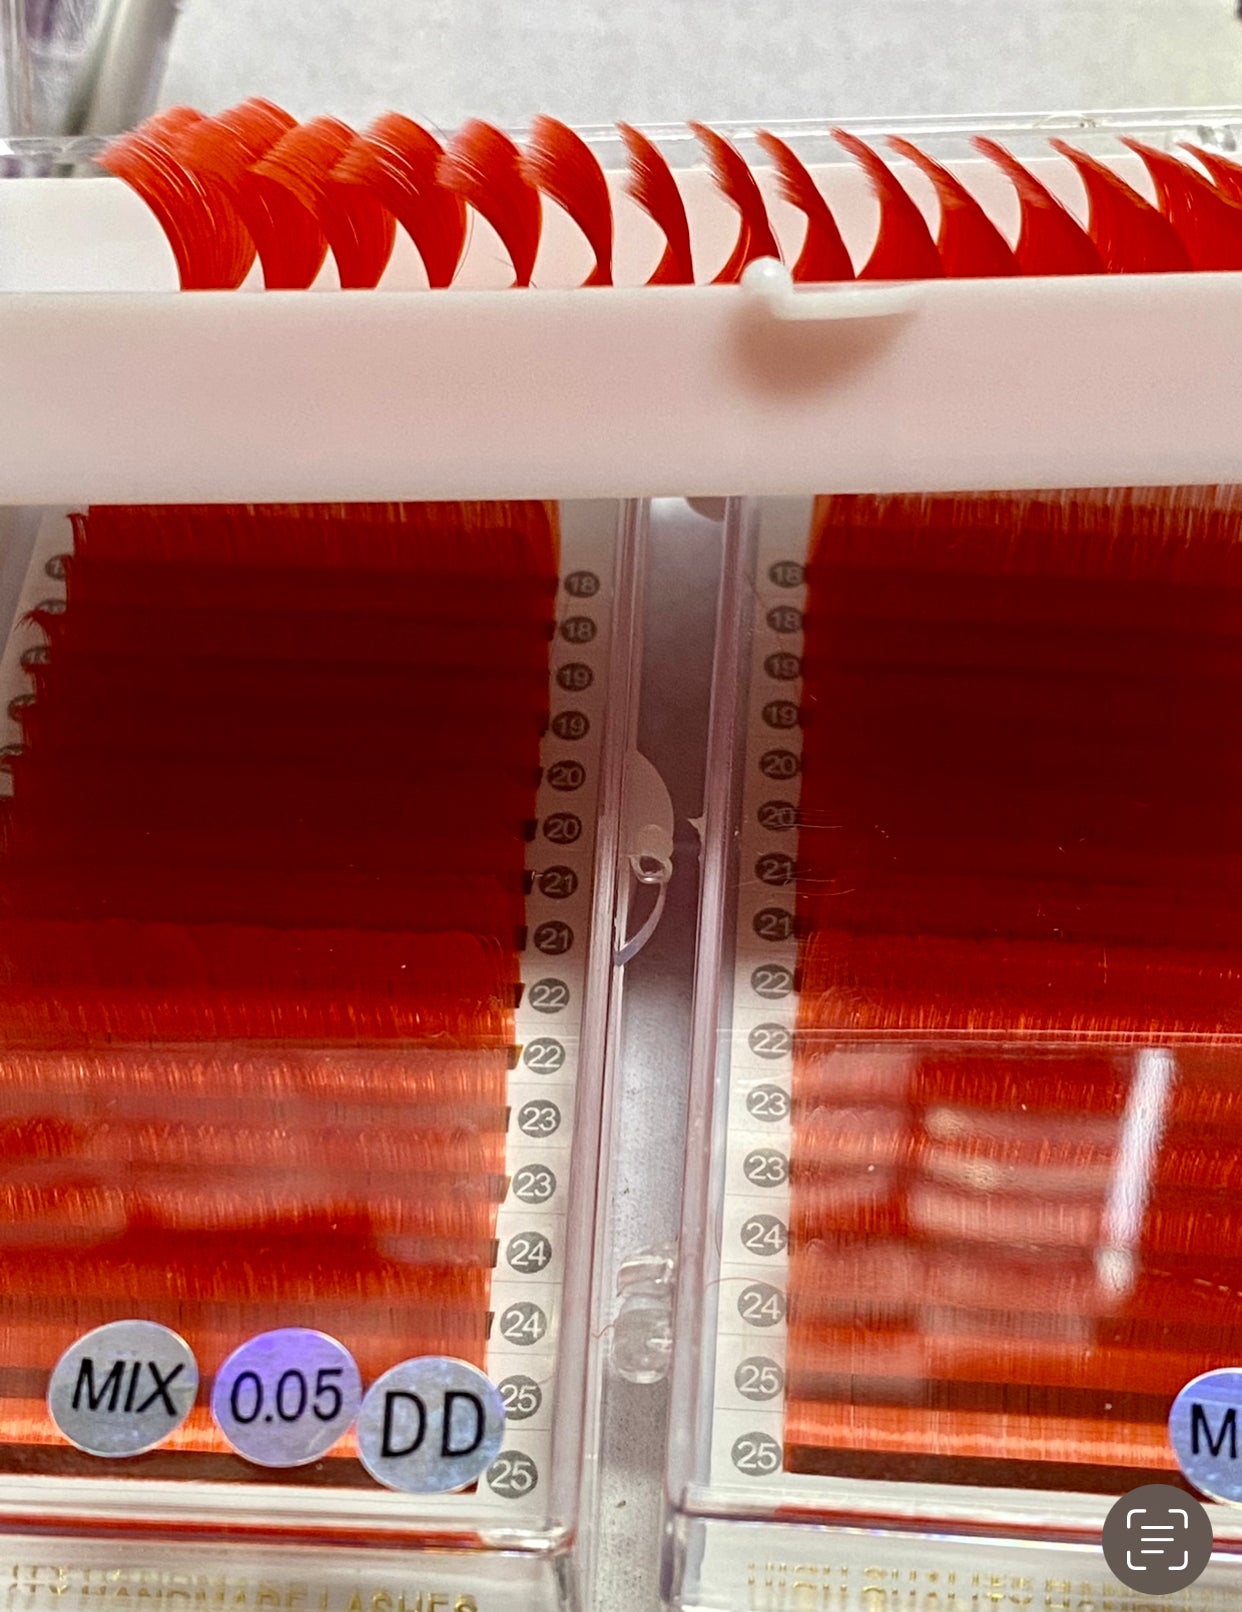 0.05mm Vivid Red Color Lash extension Tray